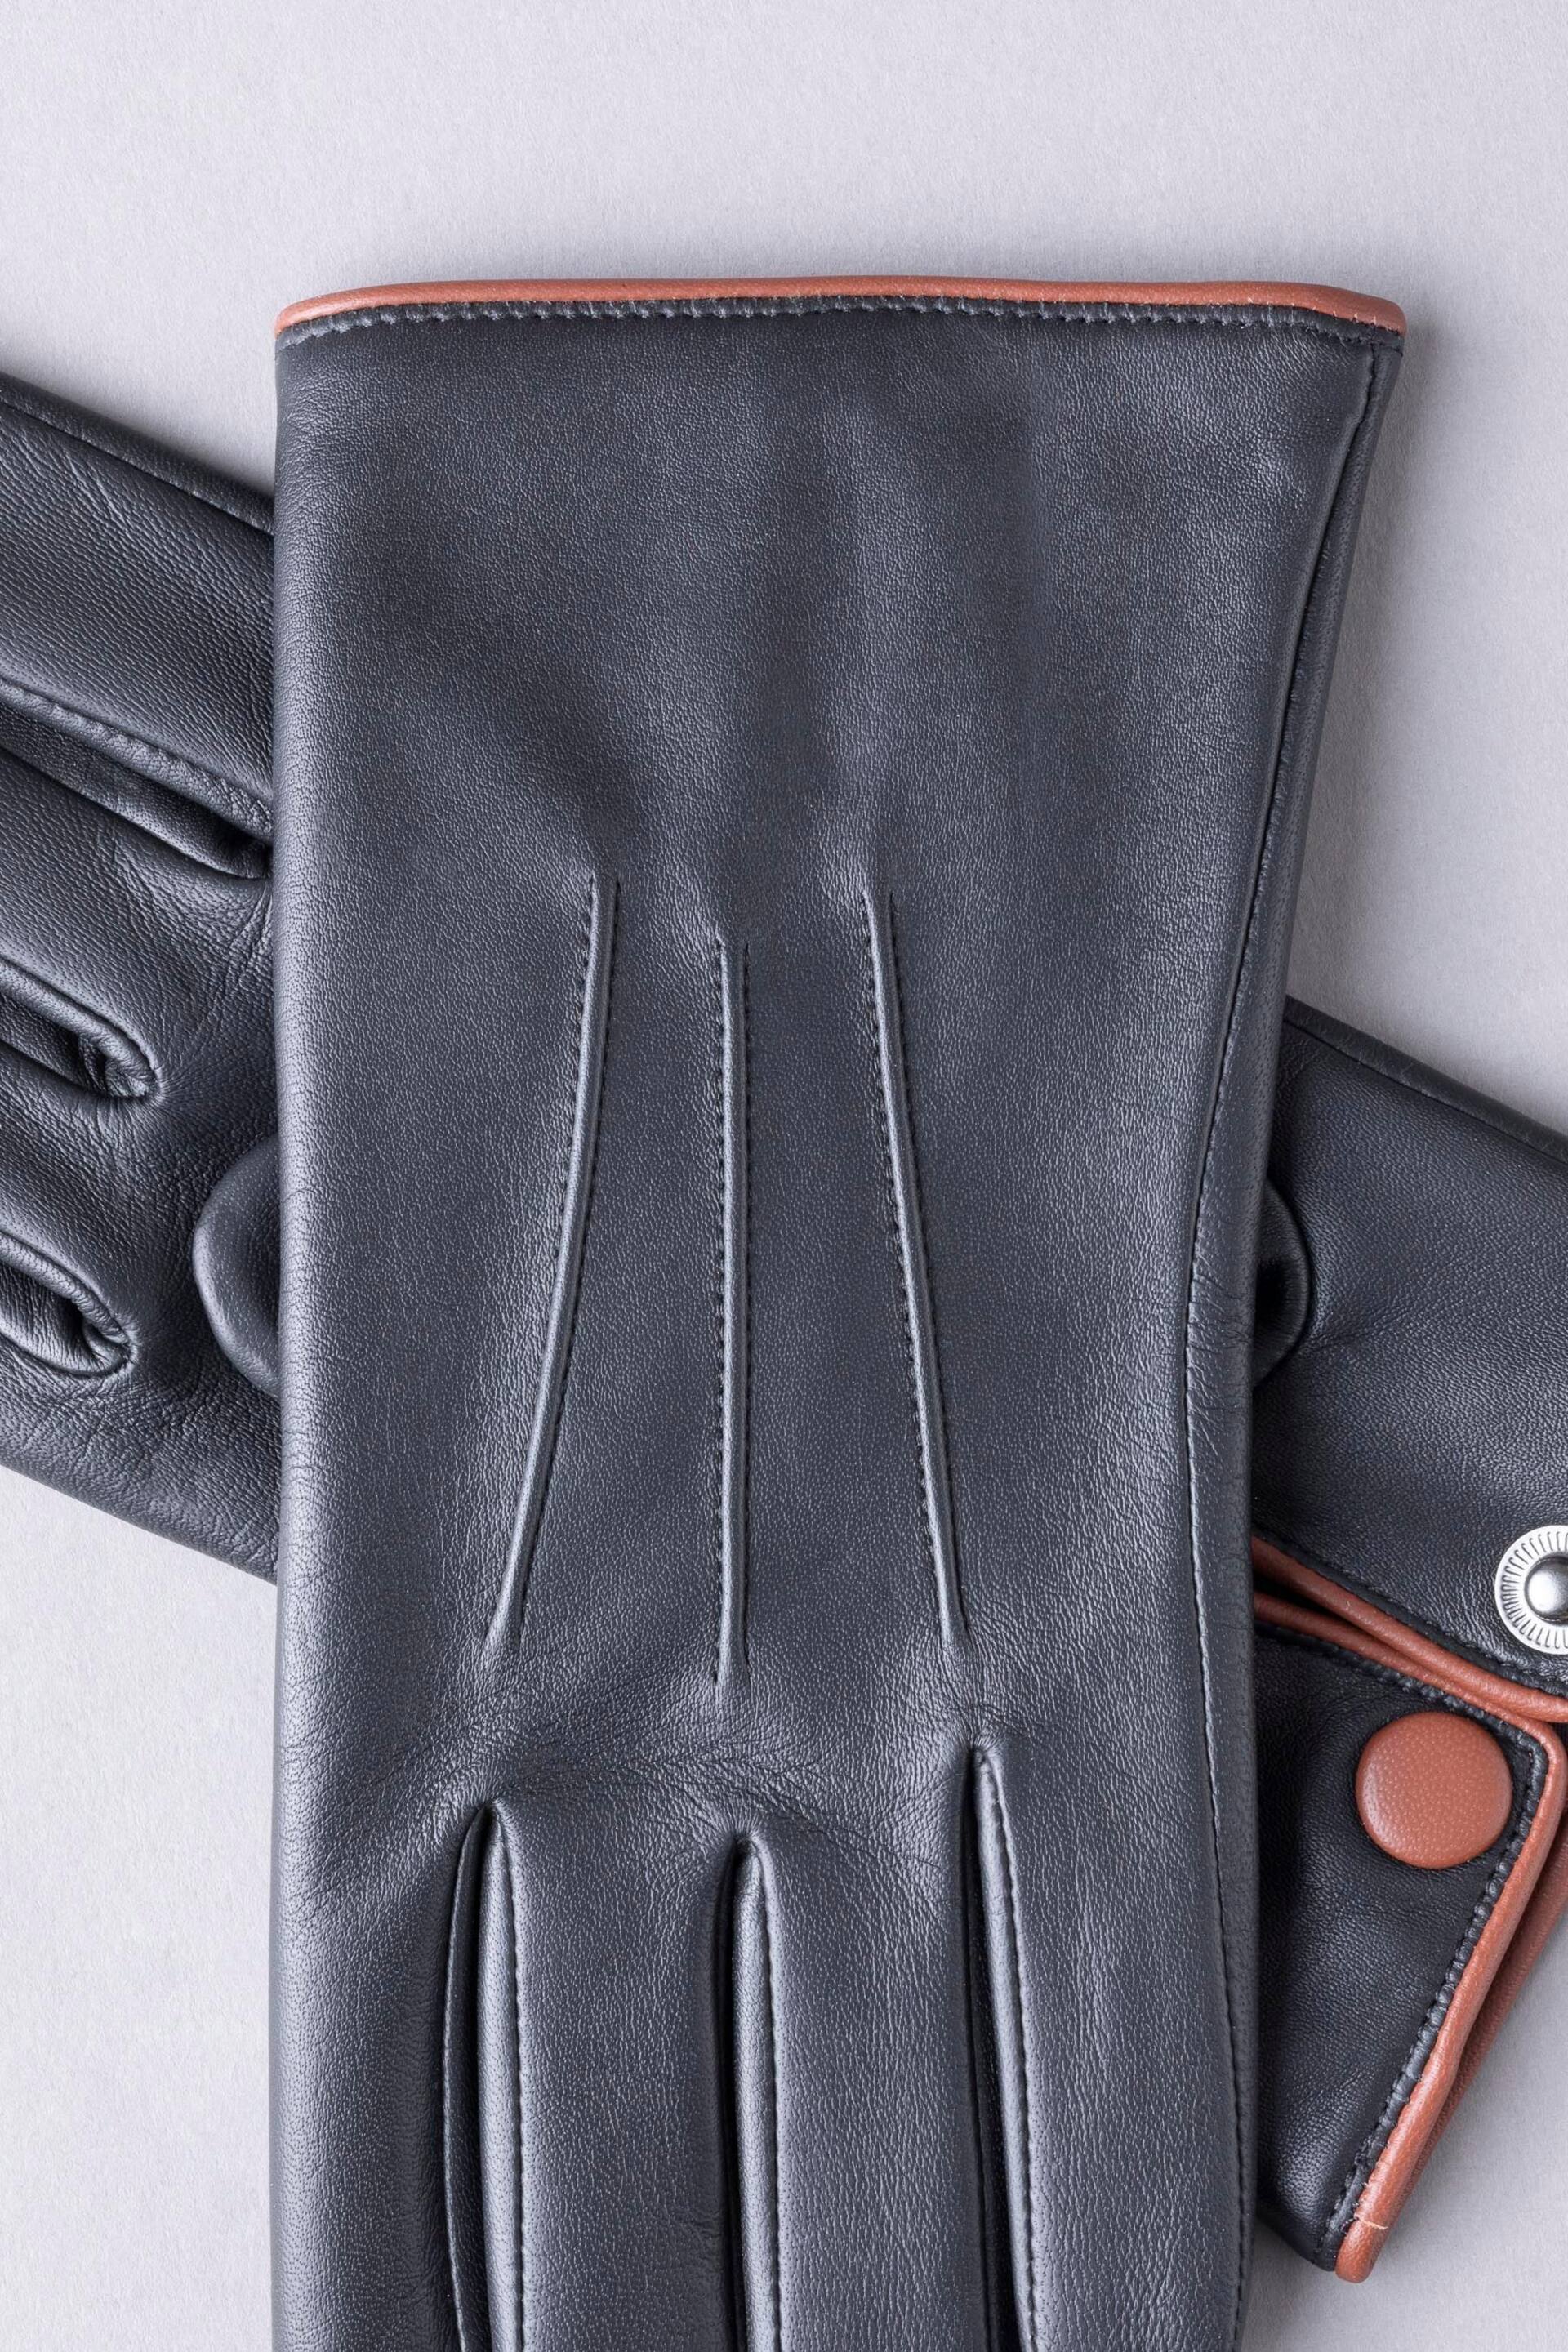 Lakeland Leather Swinside Leather Gloves - Image 3 of 3